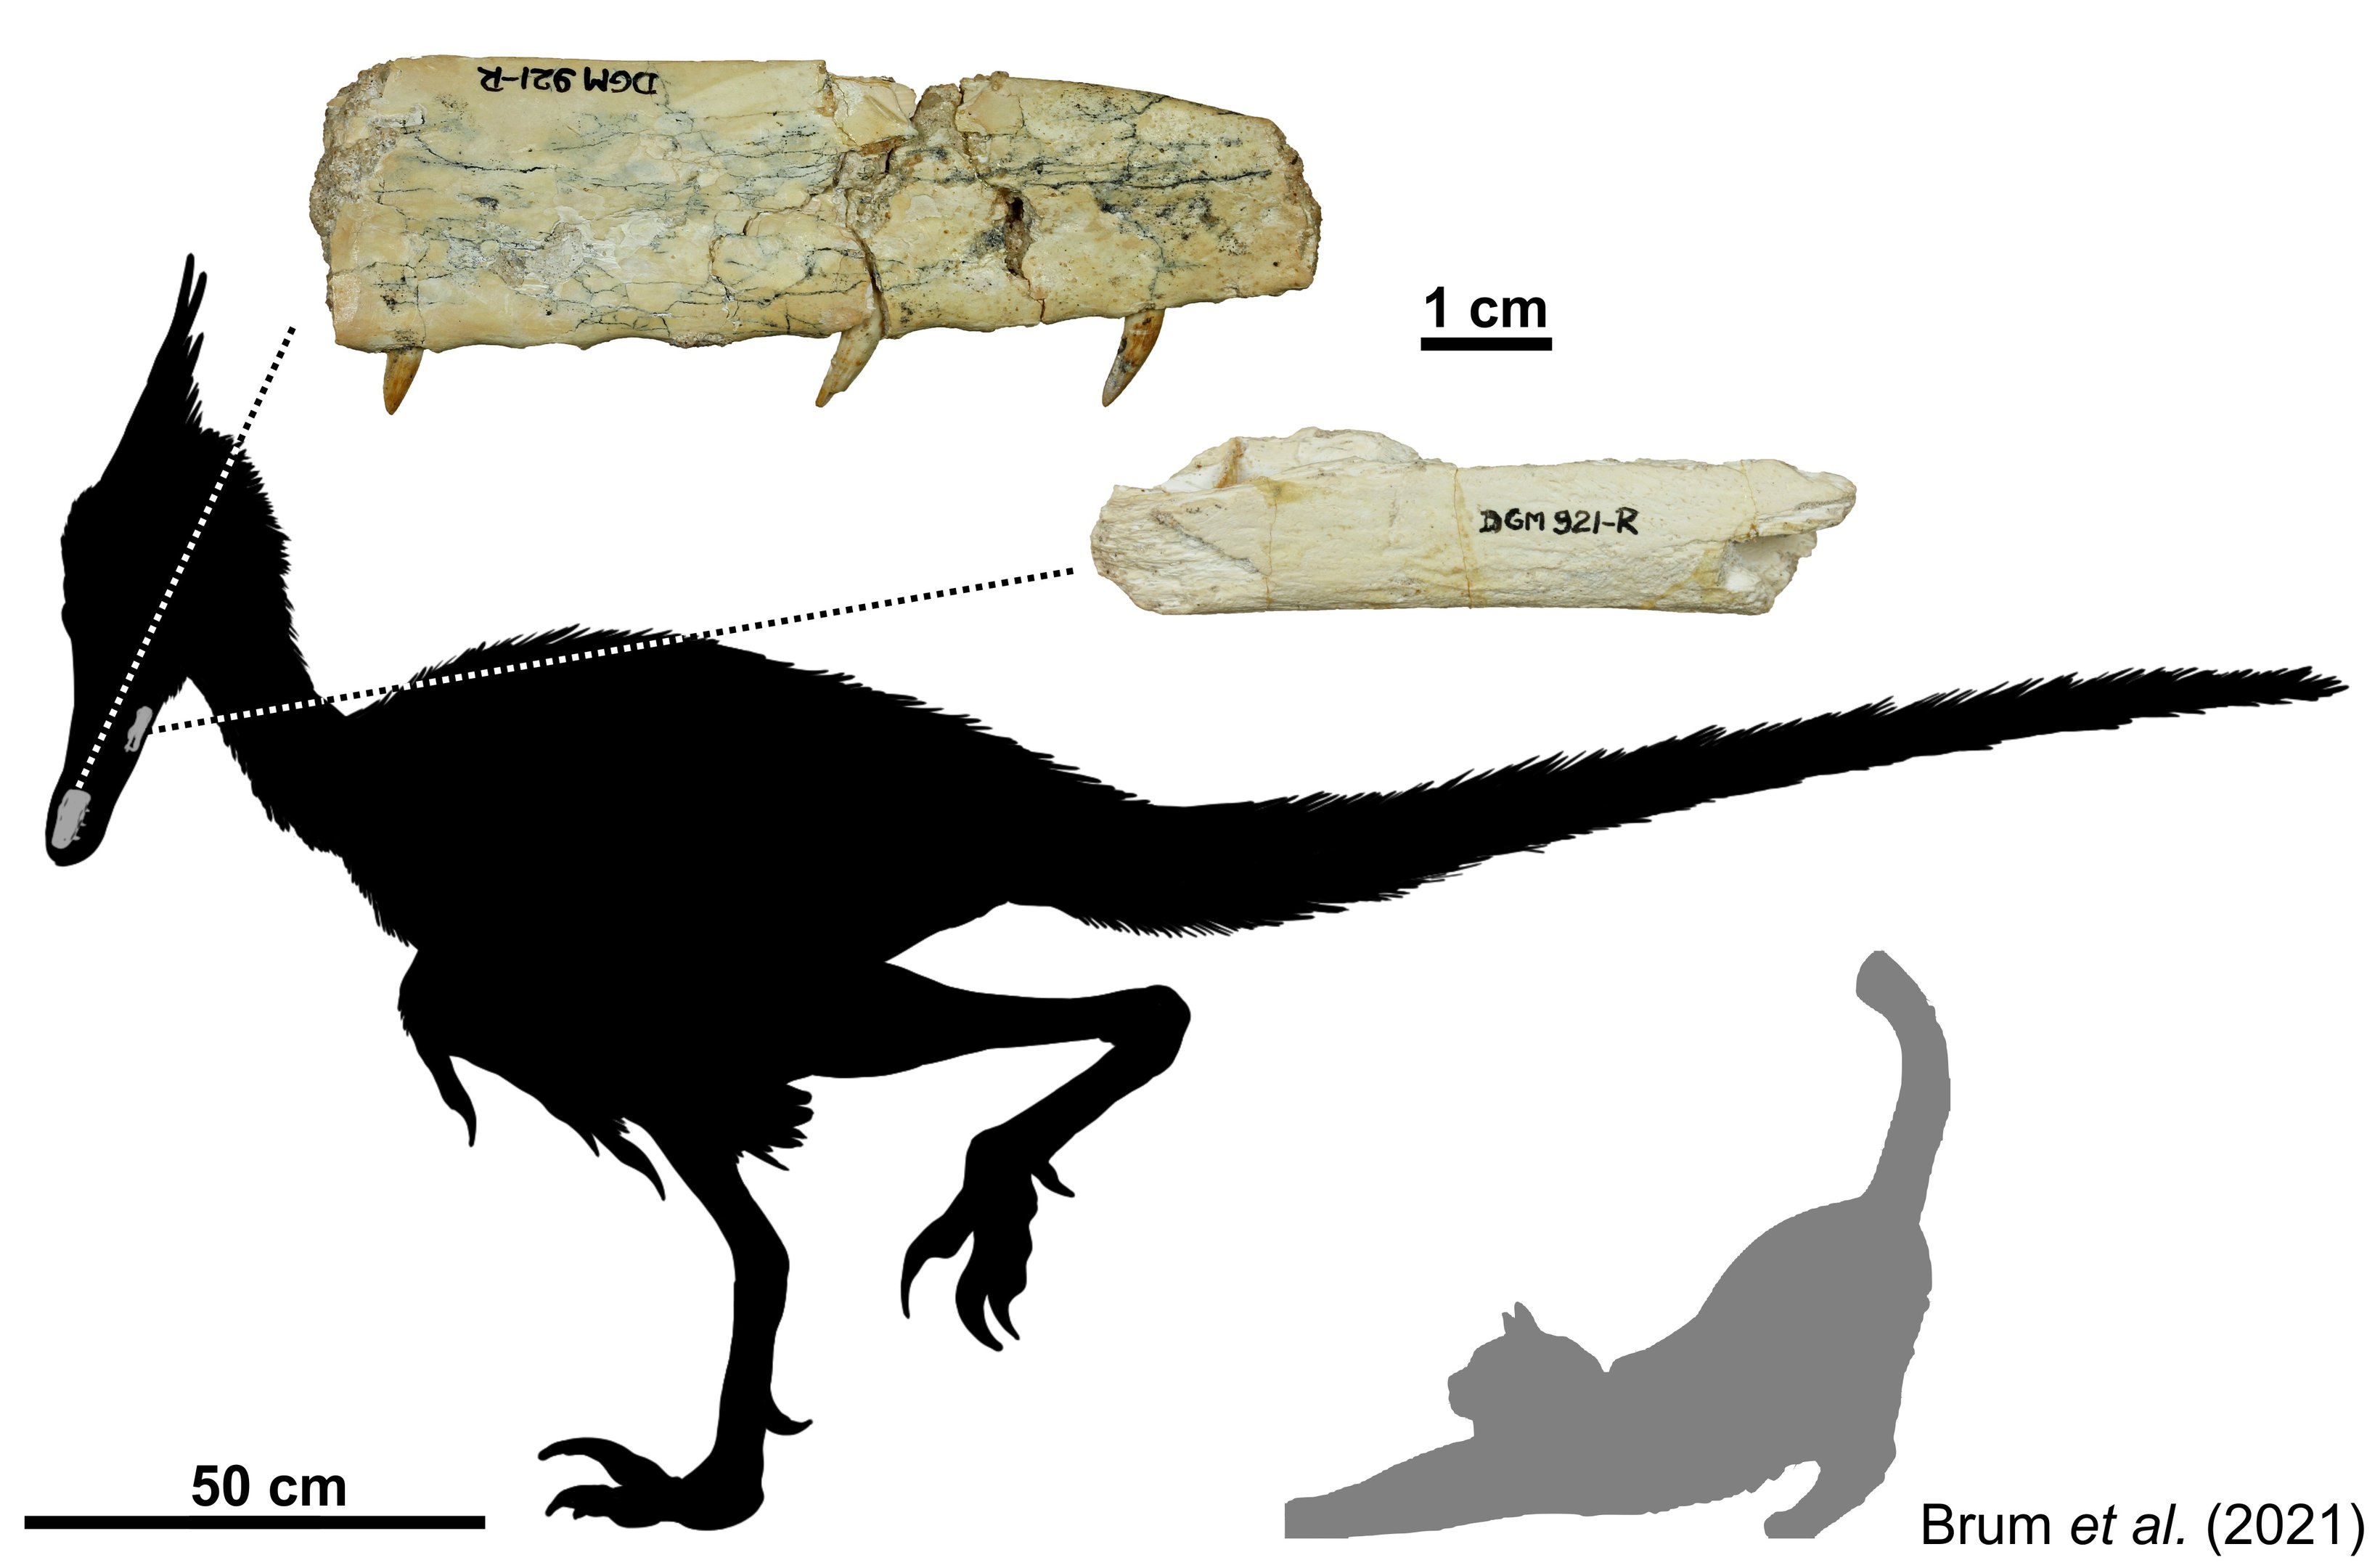 Dinossauro descoberto no Triângulo Mineiro ganhou o nome Ypupiara lopai